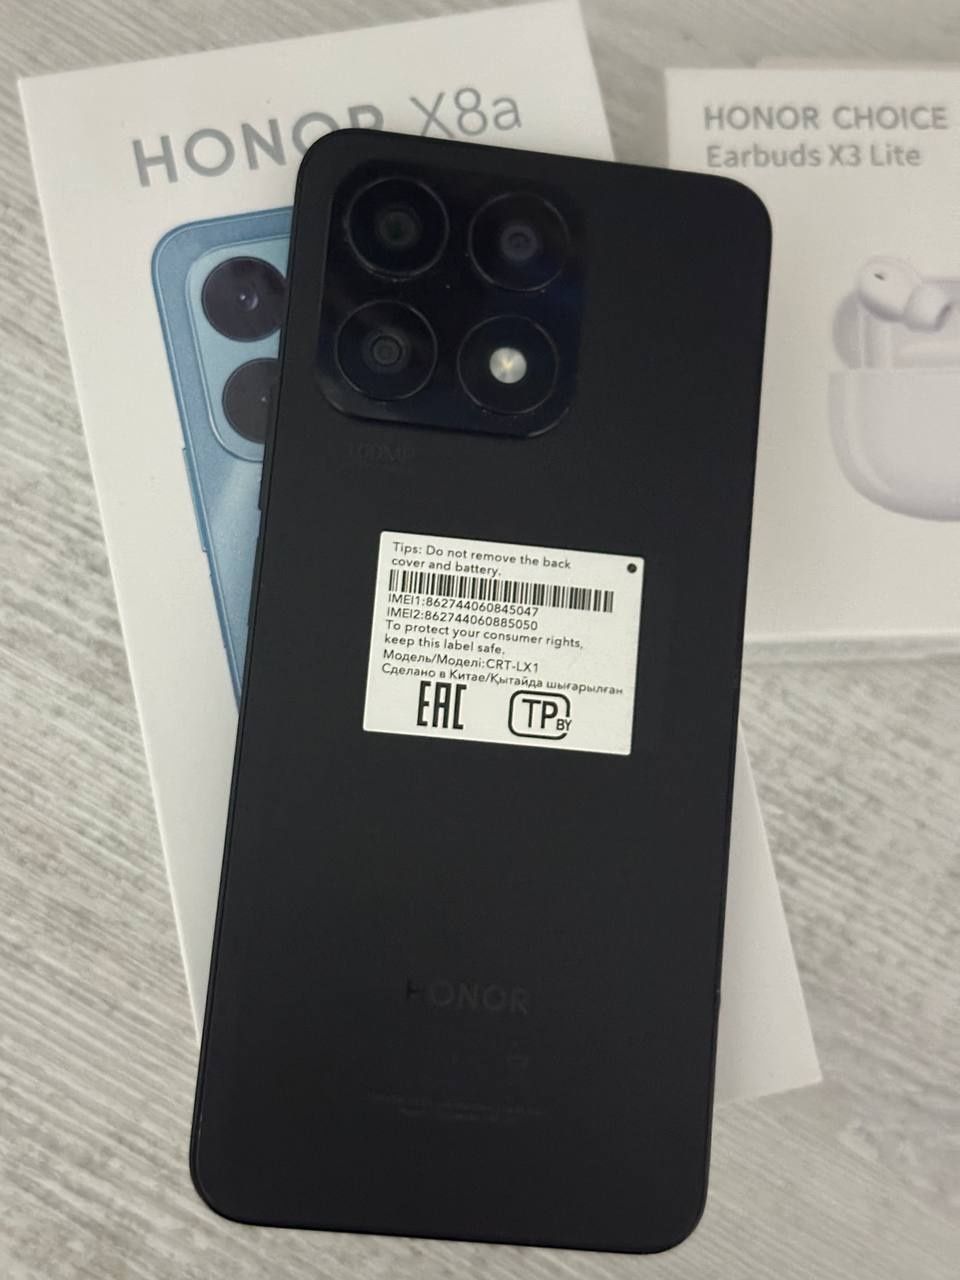 Huawei HONOR X8a